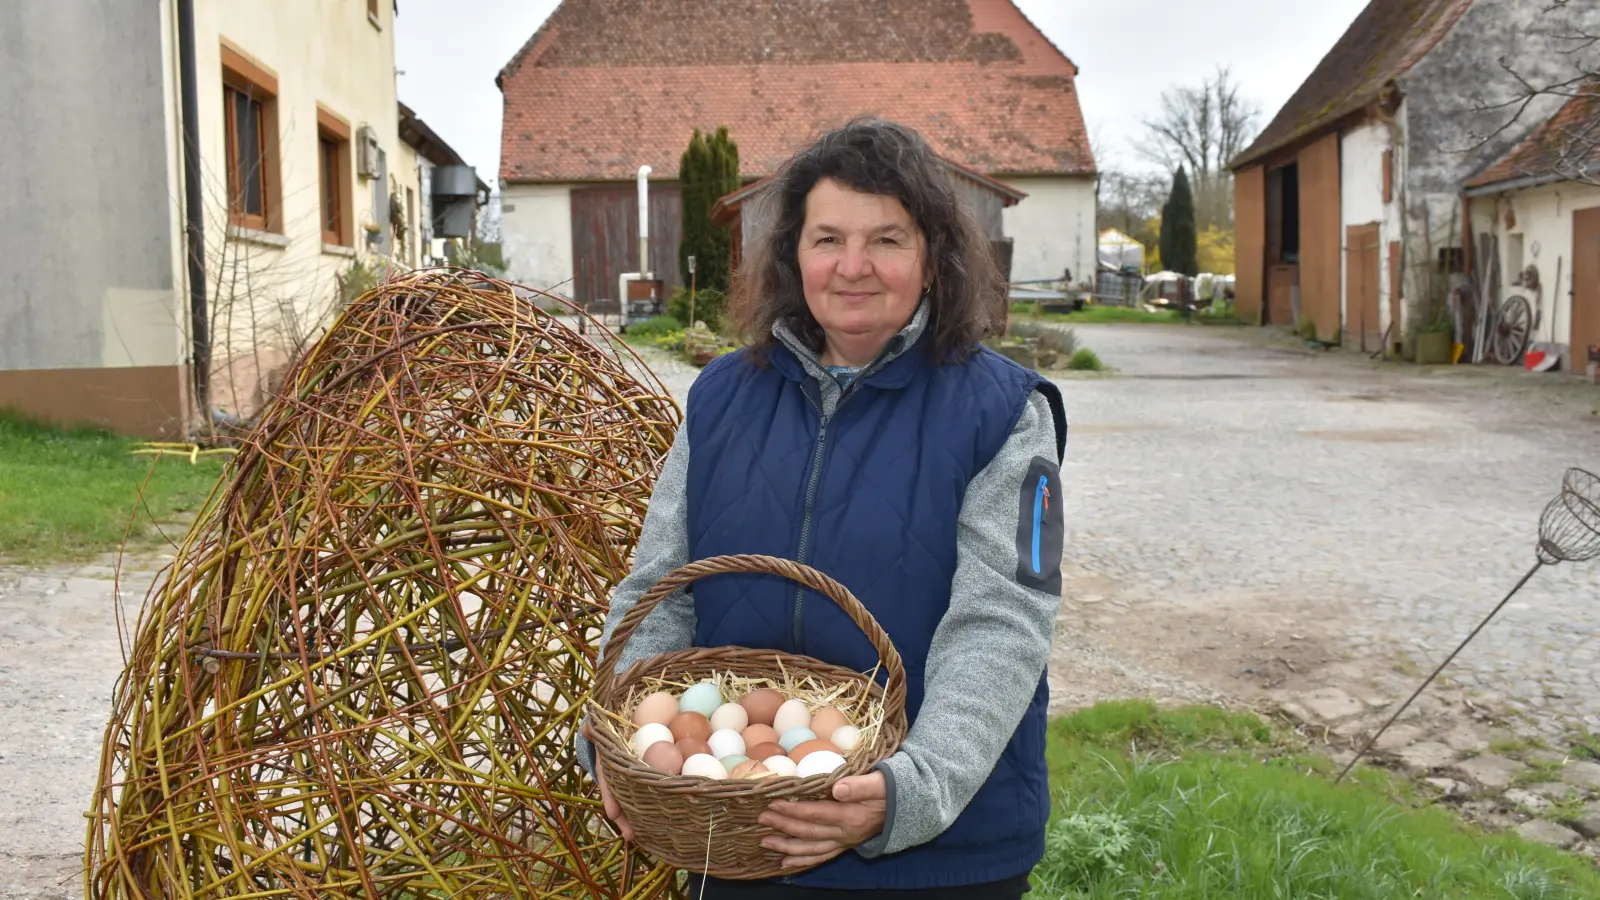 Helga Hopf aus Emskirchen-Buchklingen kann sich das Eierfärben sparen, weil die Exemplare von Natur aus schon gefärbt sind. (Foto: Ute Niephaus)